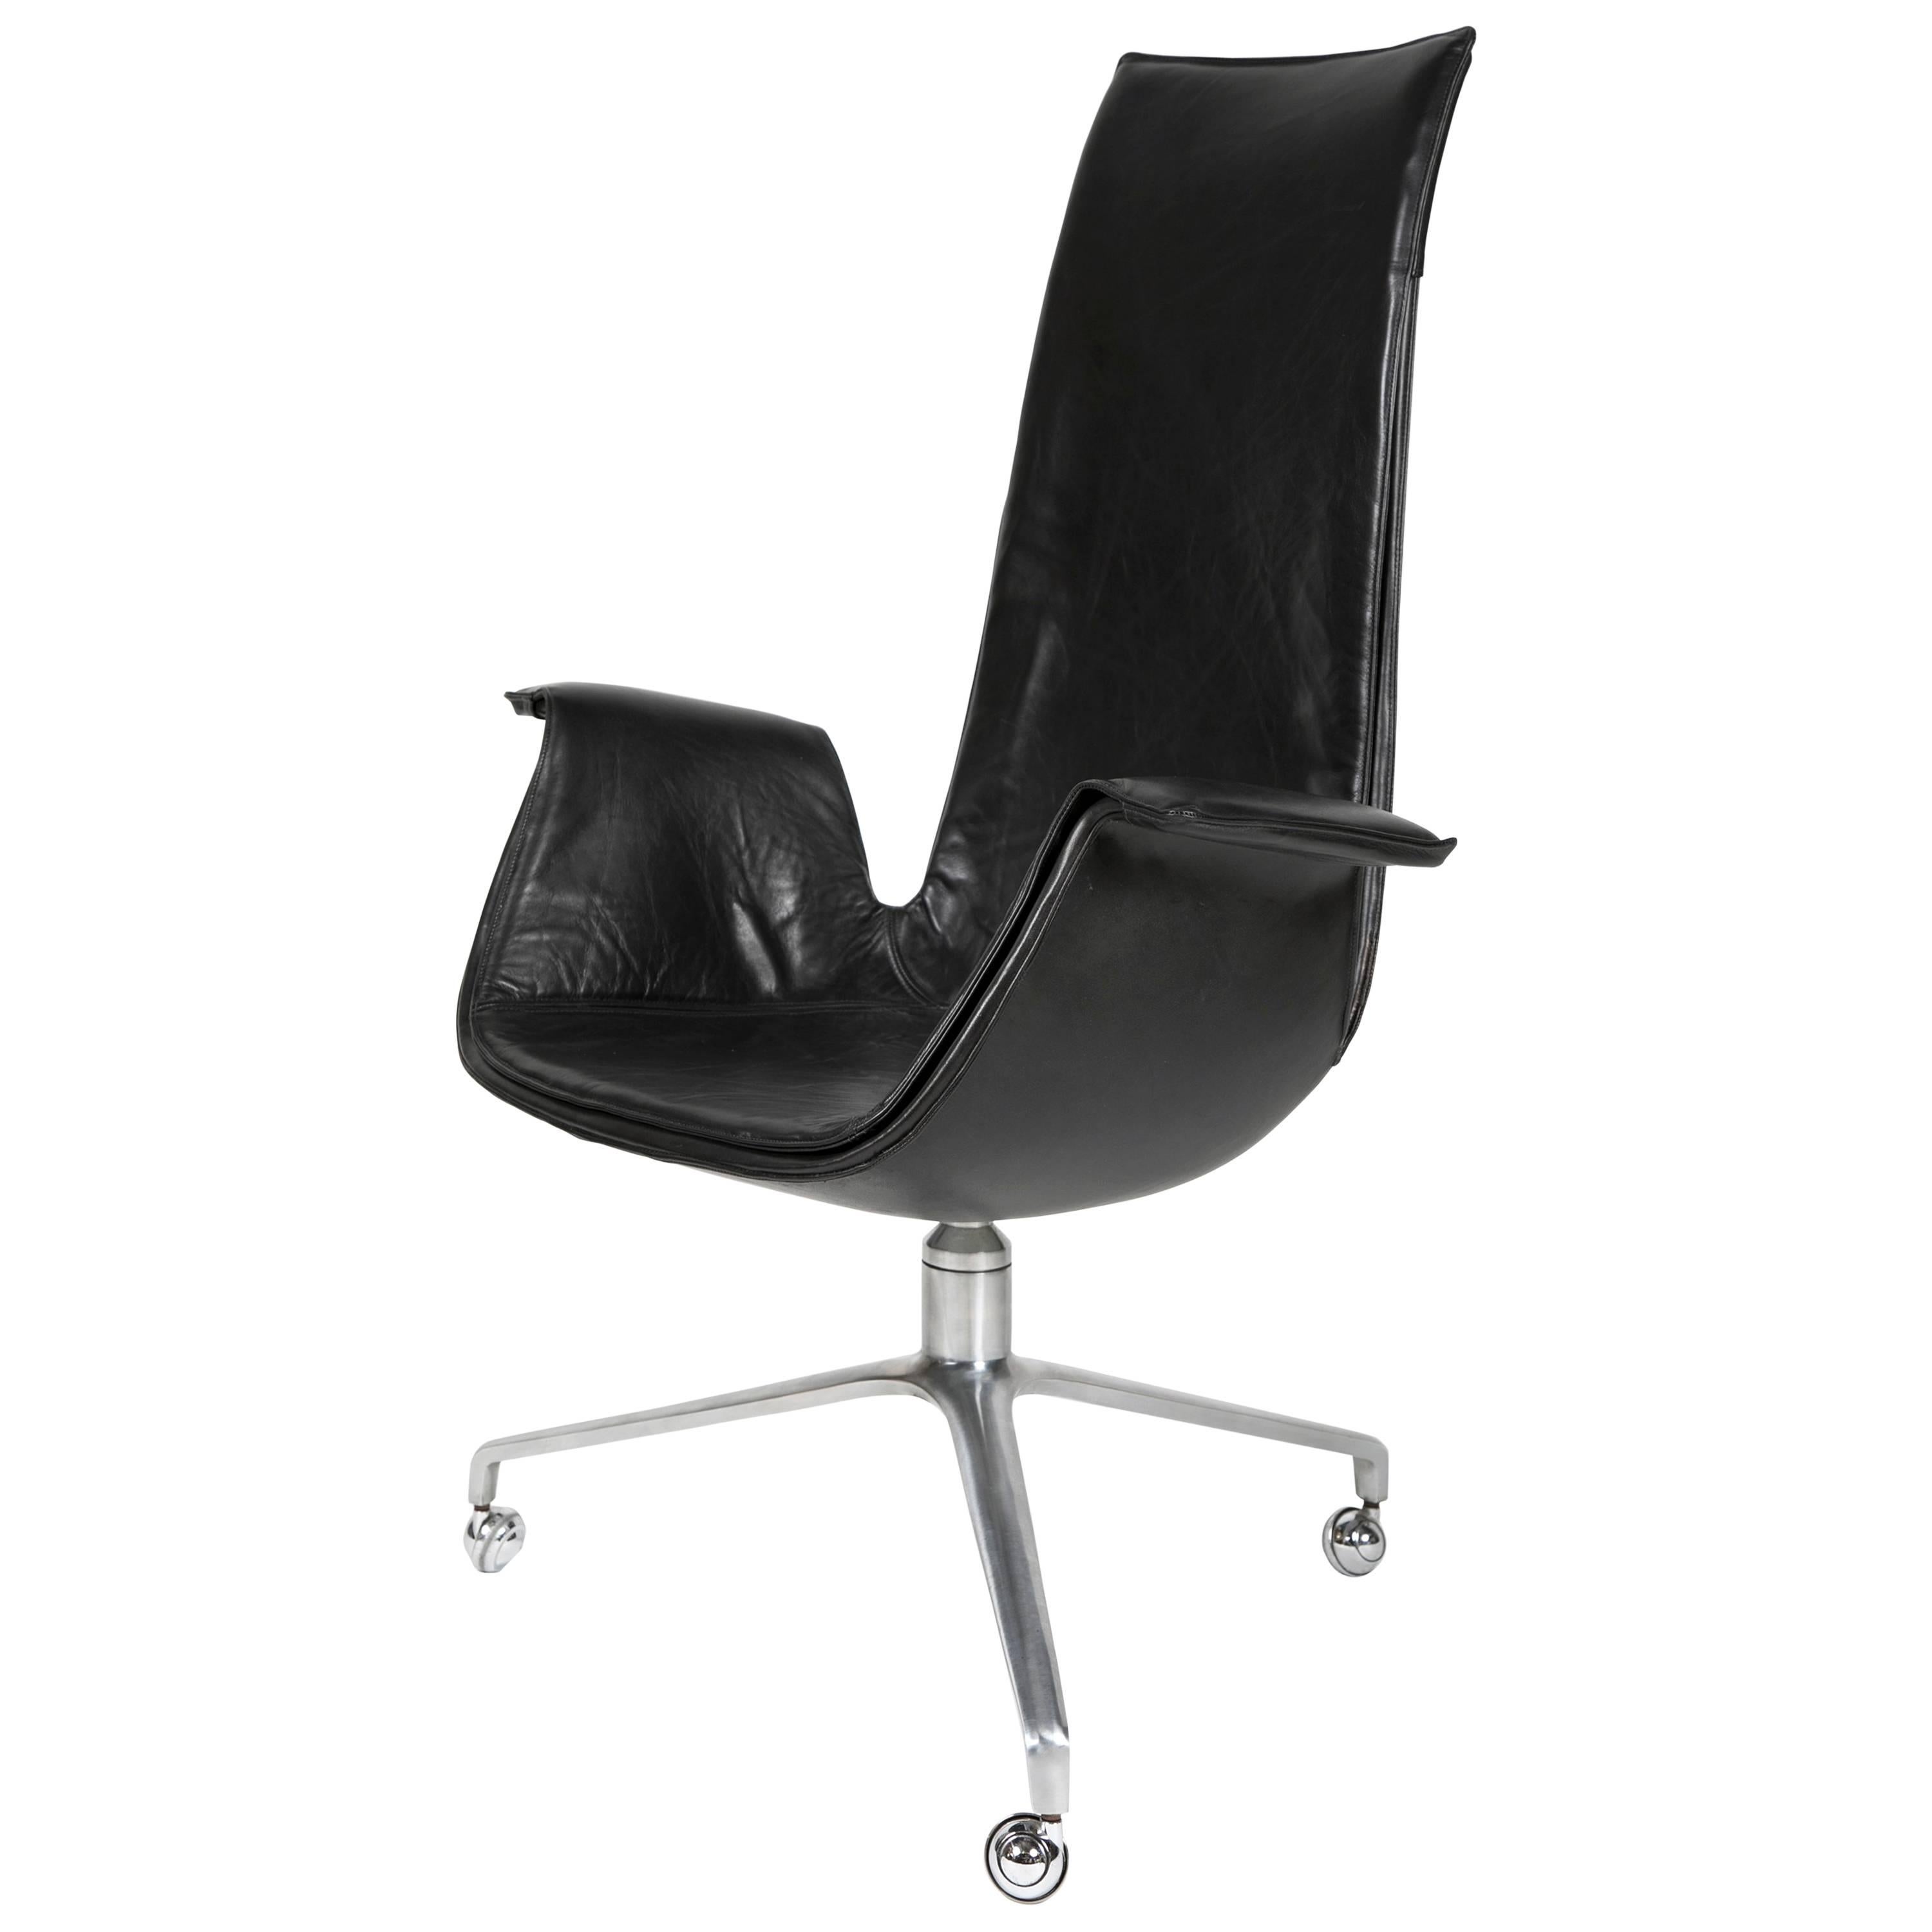 Desk ‘Bird’ Chair by Preben Fabricius for Alfred Kill For Sale